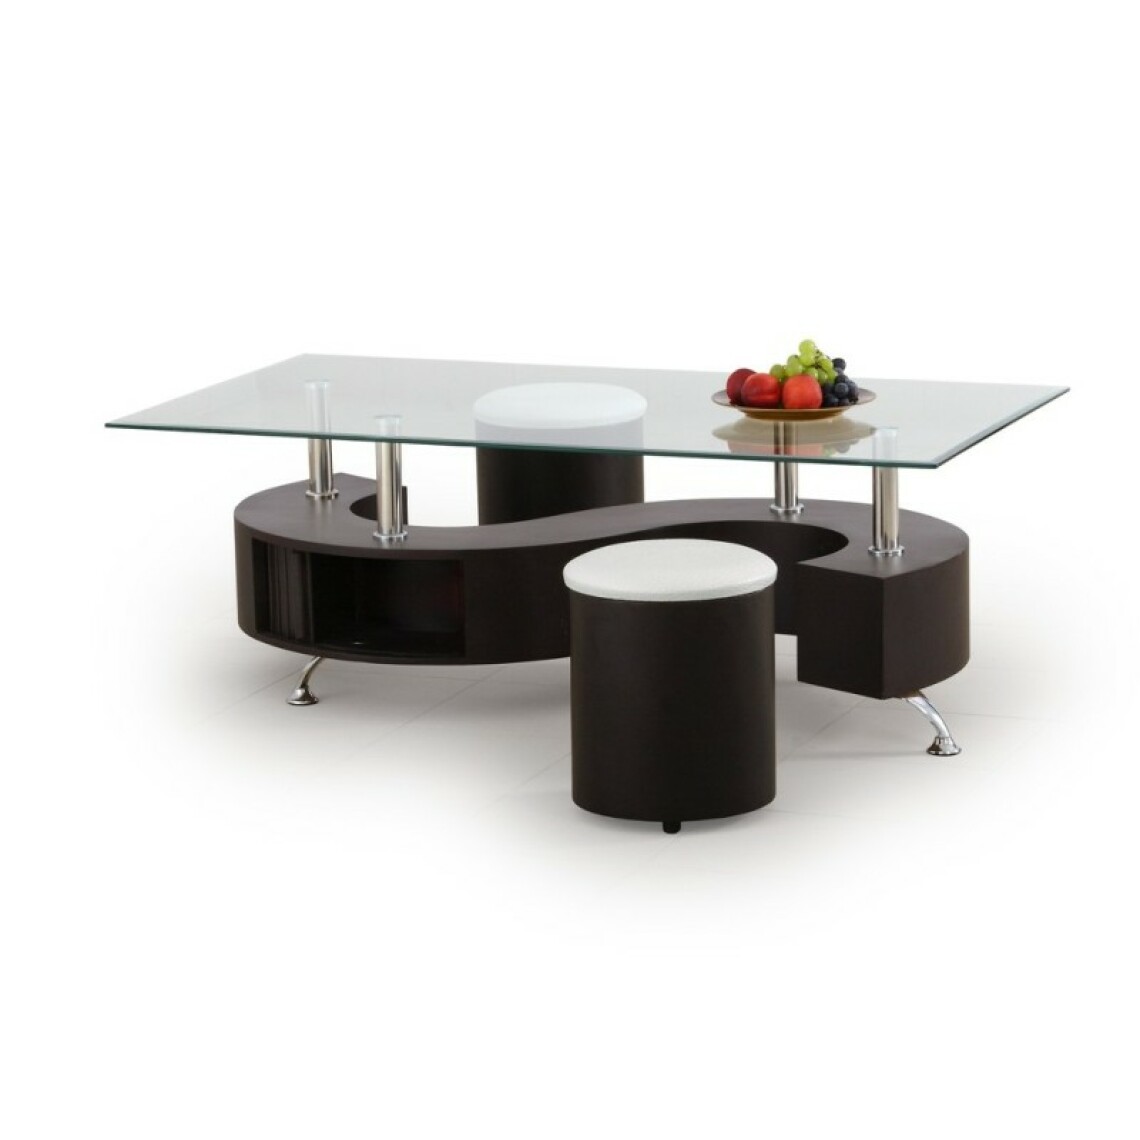 Carellia - Table basse rectangulaire avec pouf - Wengé - Tables basses